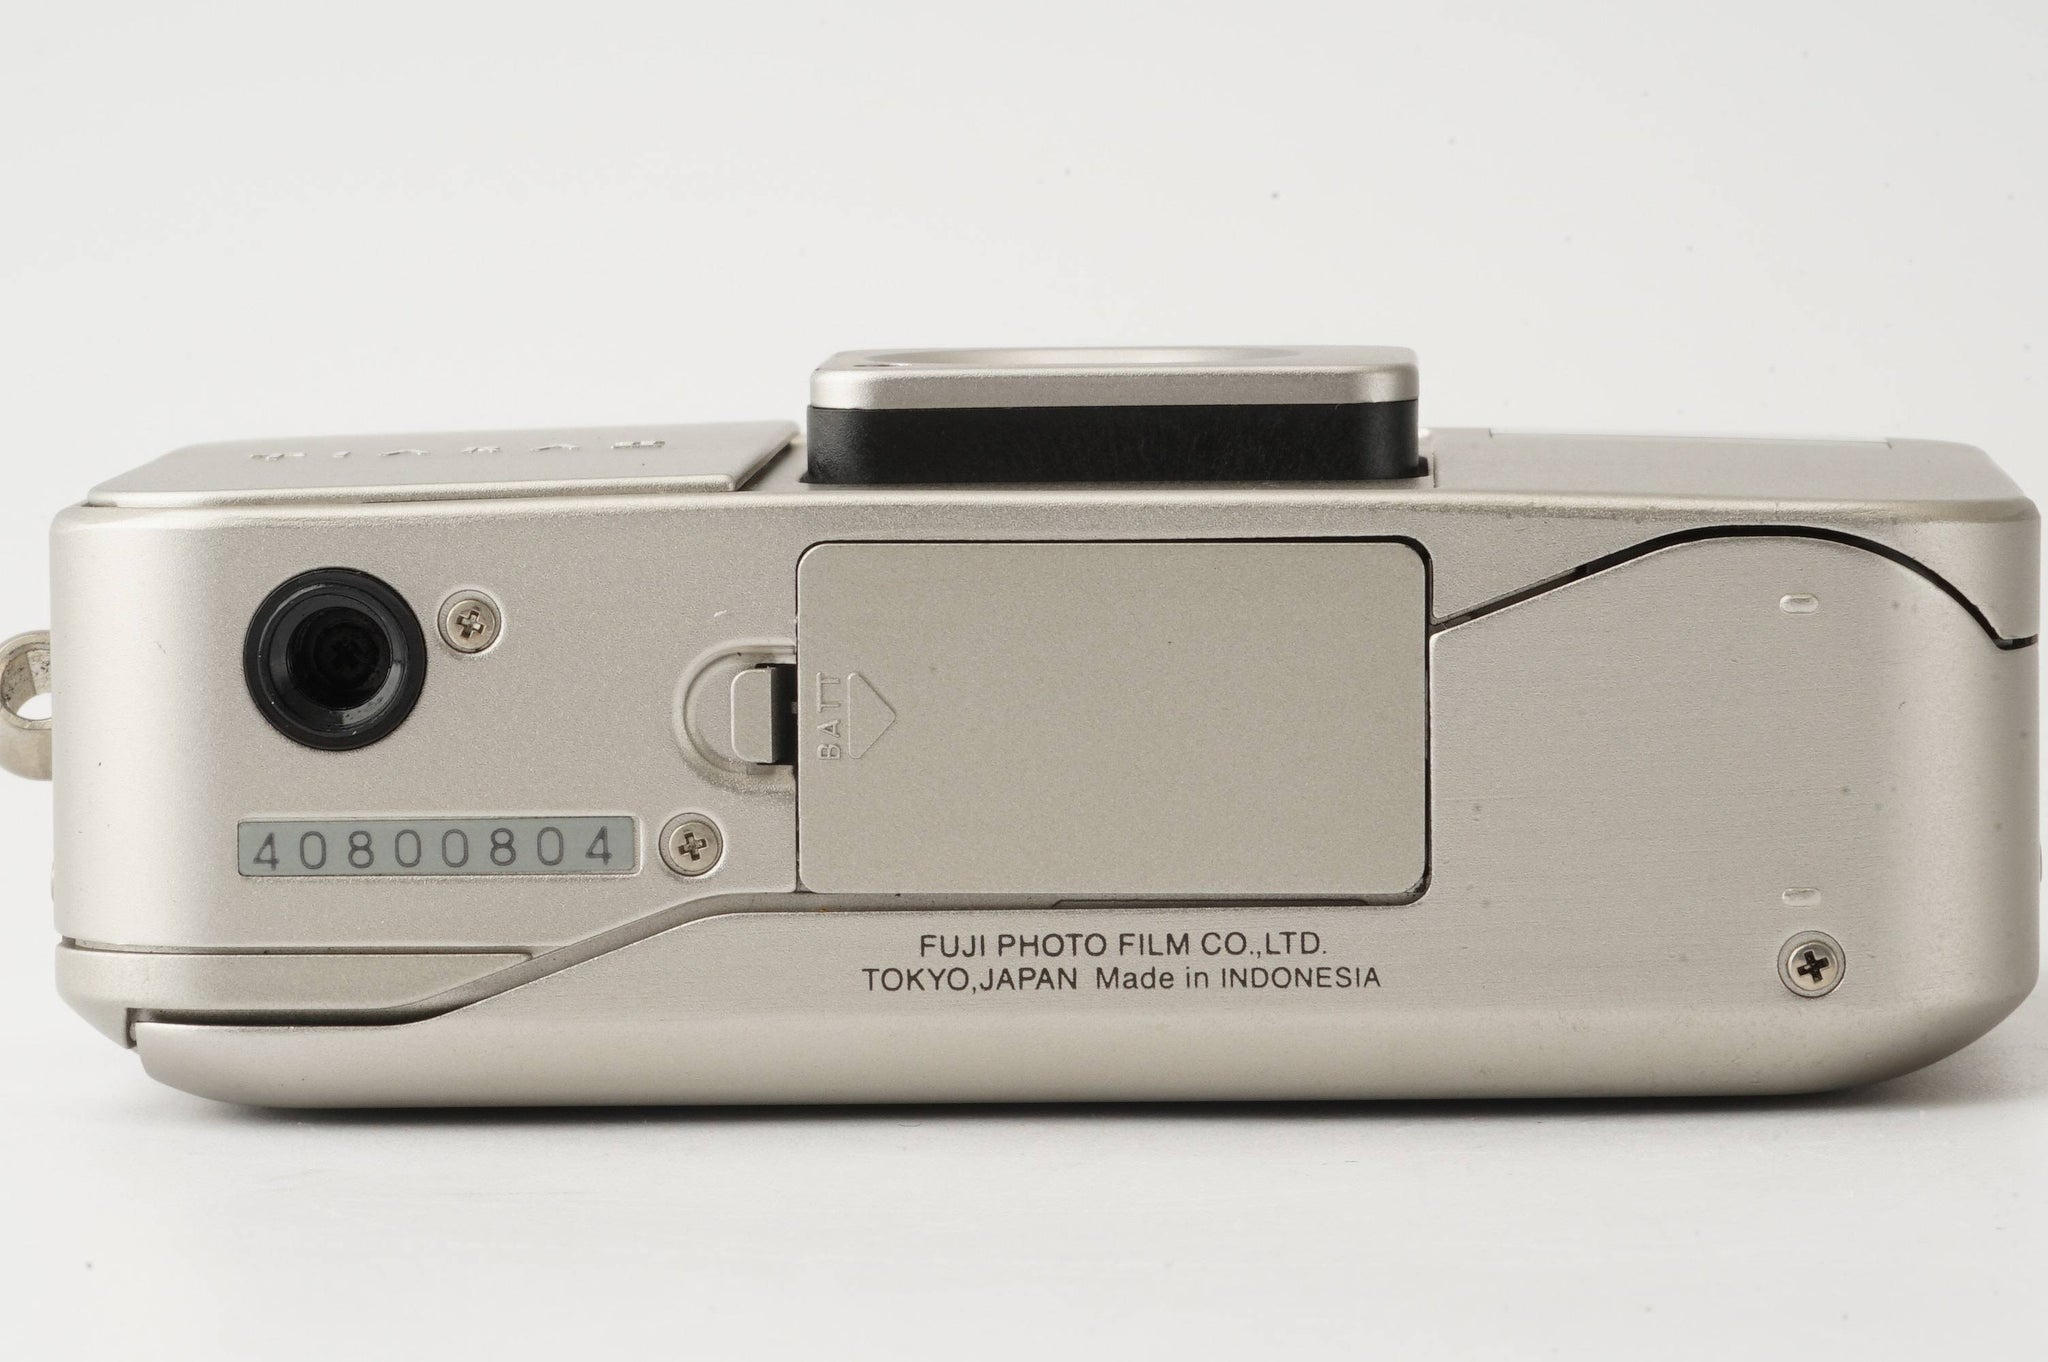 FUJIFILM TIARA II フィルム コンパクト カメラ 28mm